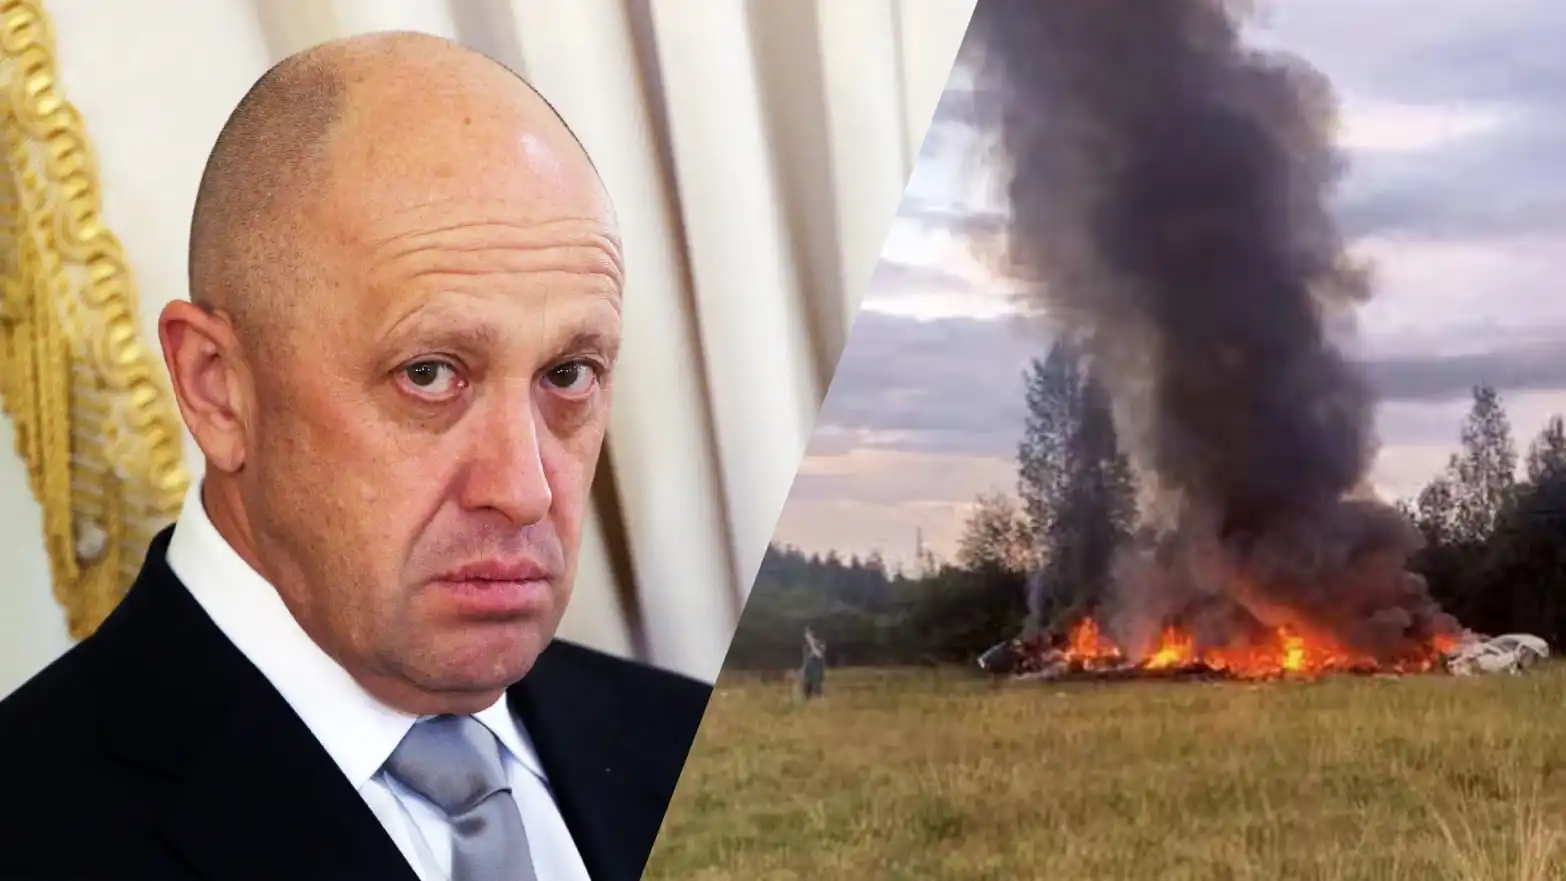 Was Yevgeny Prigozhin plane shot down?